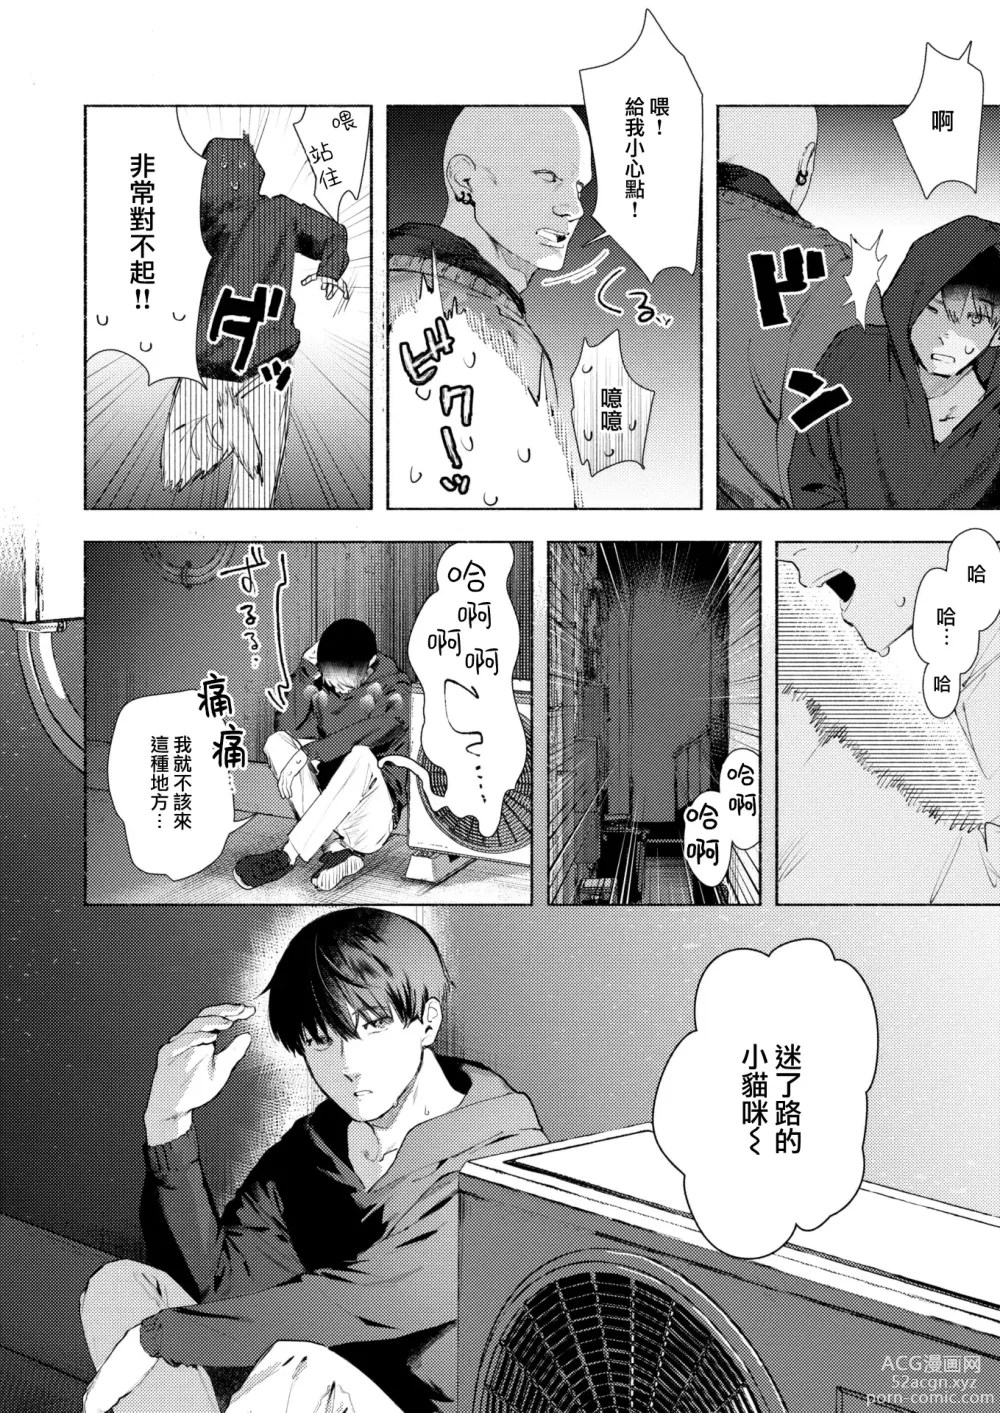 Page 6 of manga Noraneko